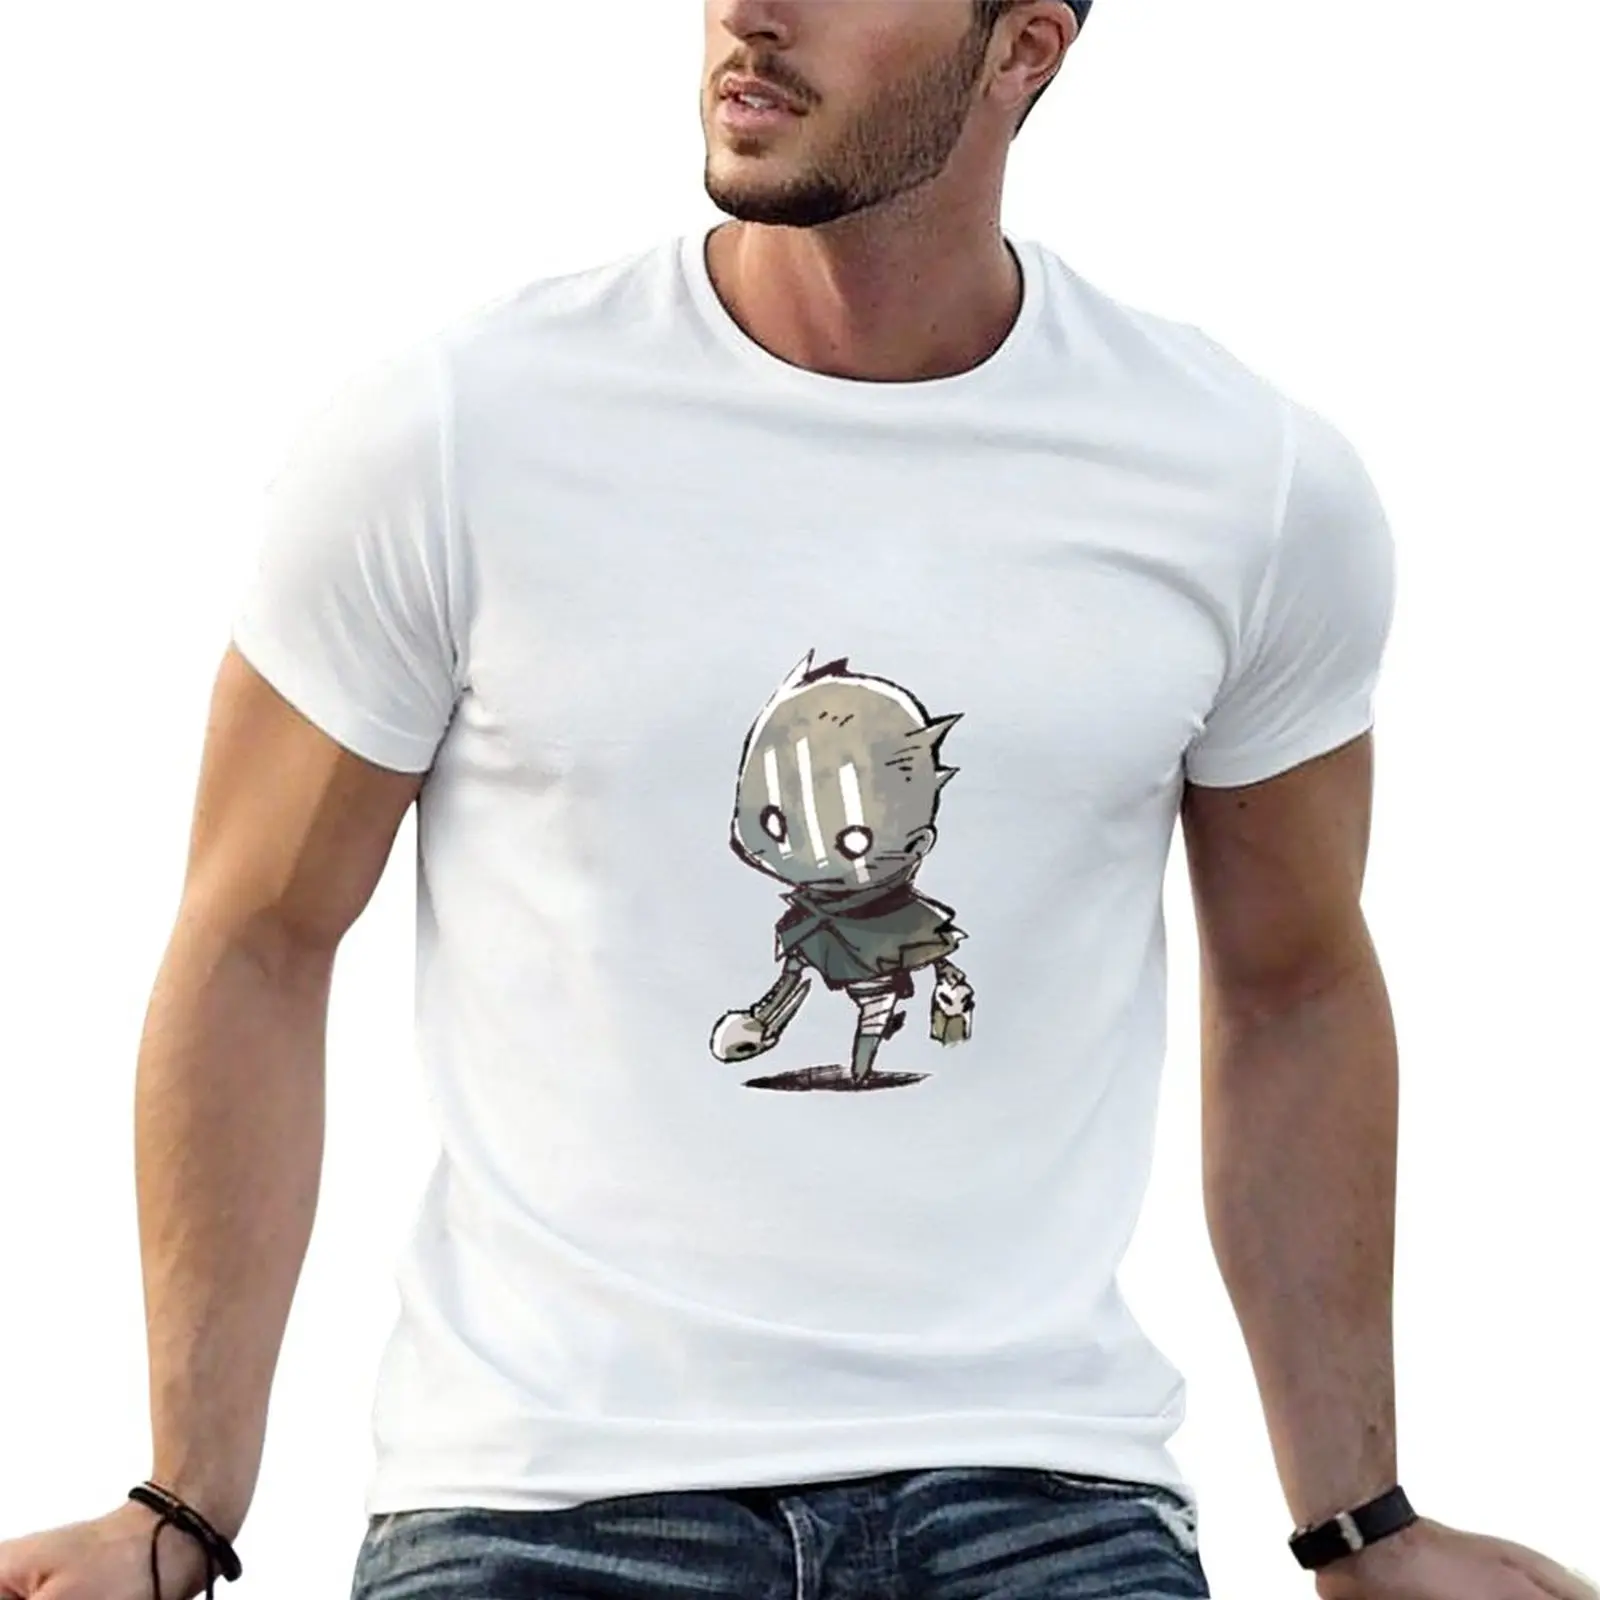 футболки wraith, топы, забавные футболки, футболки с графическим рисунком, футболки, мужская одежда Изображение 0